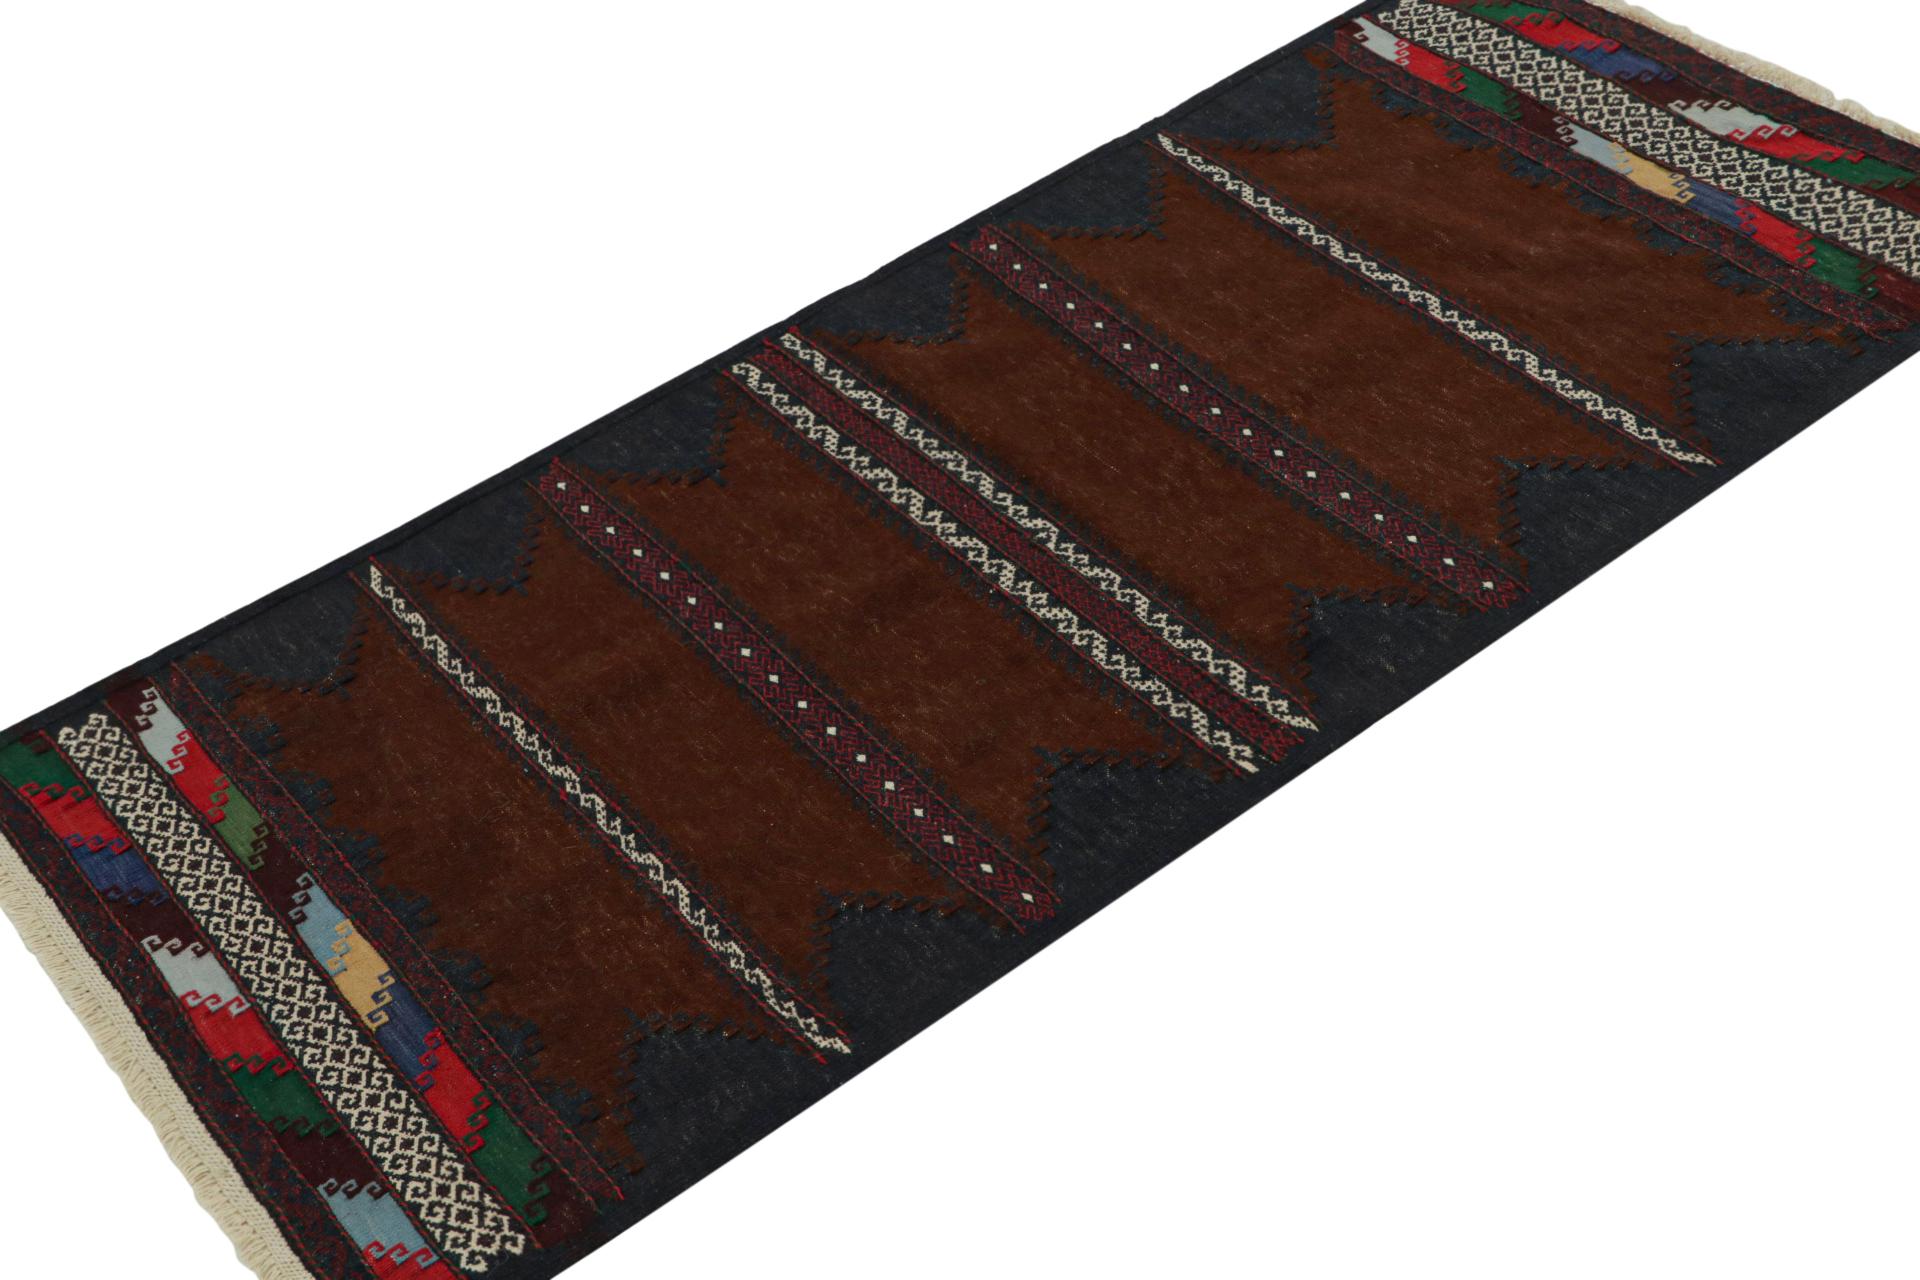 Dieser handgewebte afghanische 2x5-Stammes-Kilim-Läufer aus Wolle (ca. 1950-1960) ist ein exquisites Stück aus dem Stammesleben, das im Nomadenalltag oft als Tischdecke verwendet wurde, ähnlich wie die persischen Sofreh-Kilims. 

Über das Design: